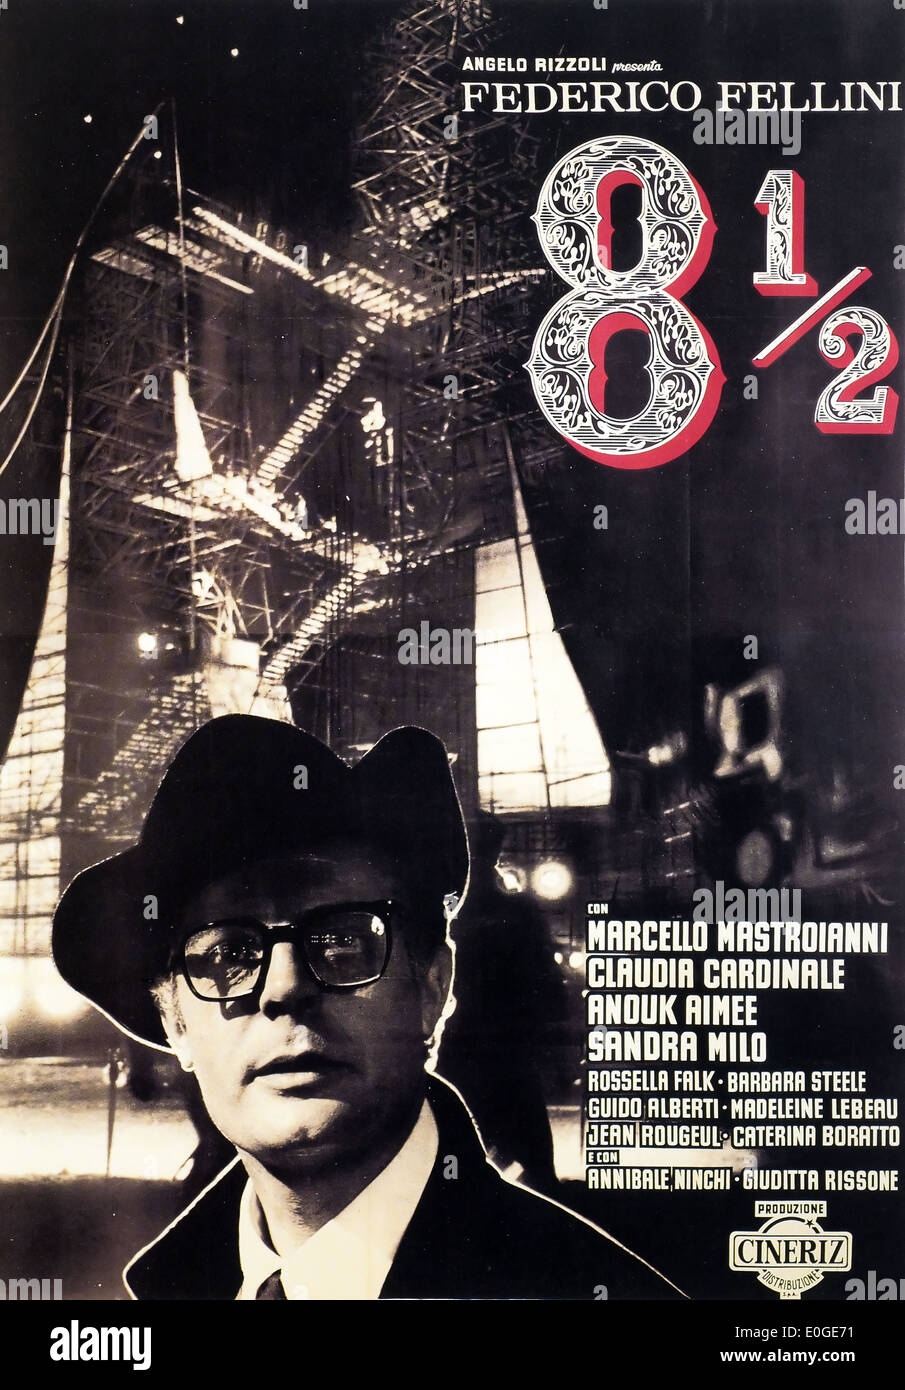 8 1/2 - Frederico Fellini - Affiche de film italien d'origine Banque D'Images